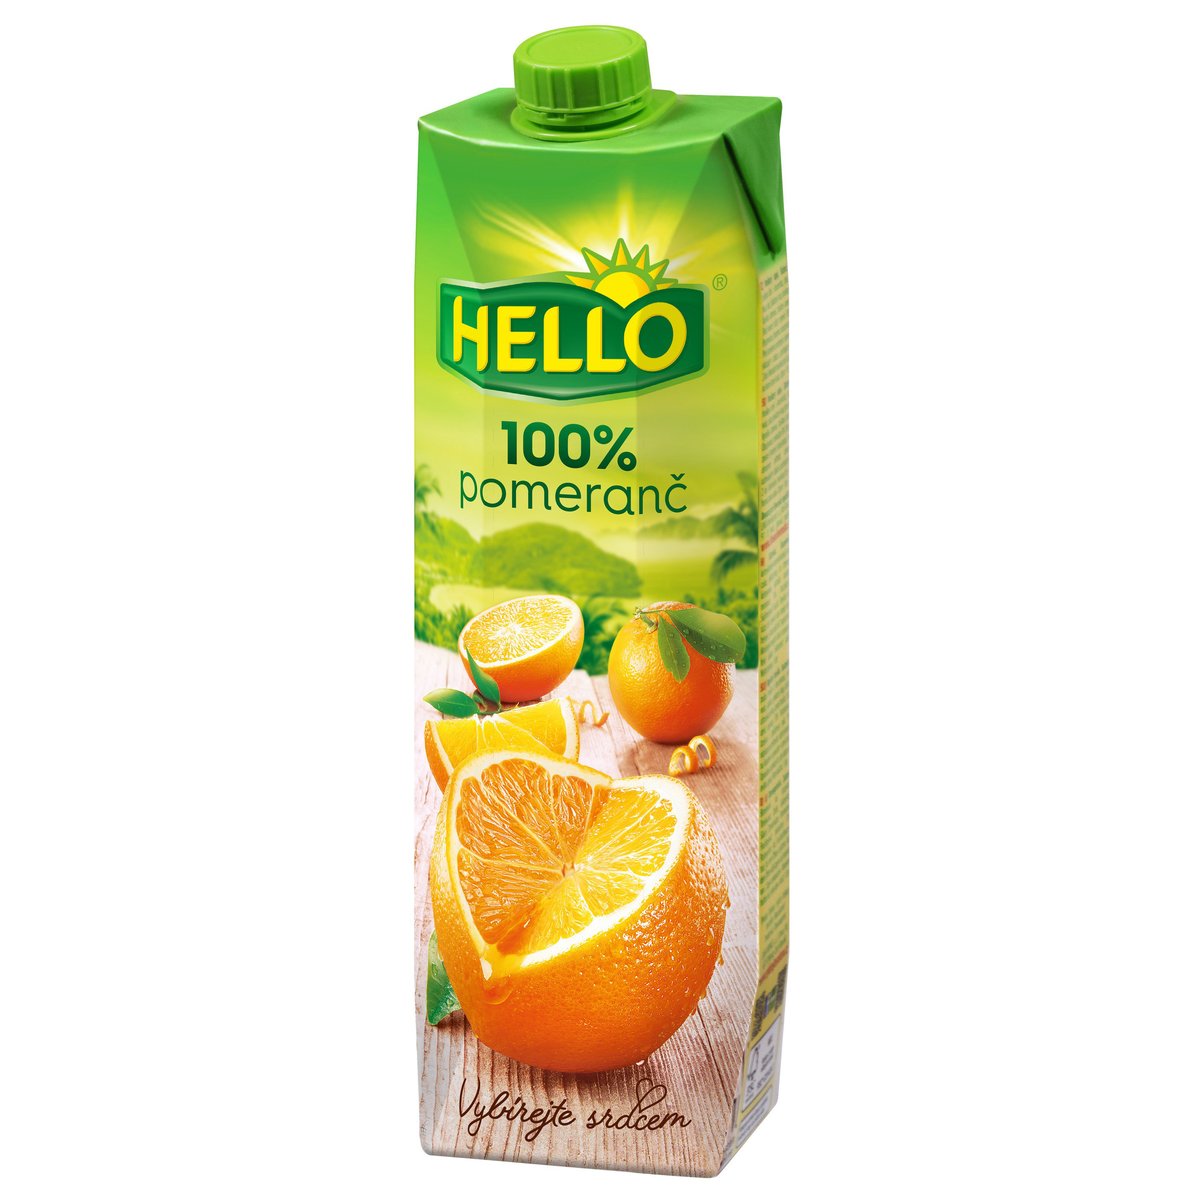 Hello 100% pomerančová šťáva